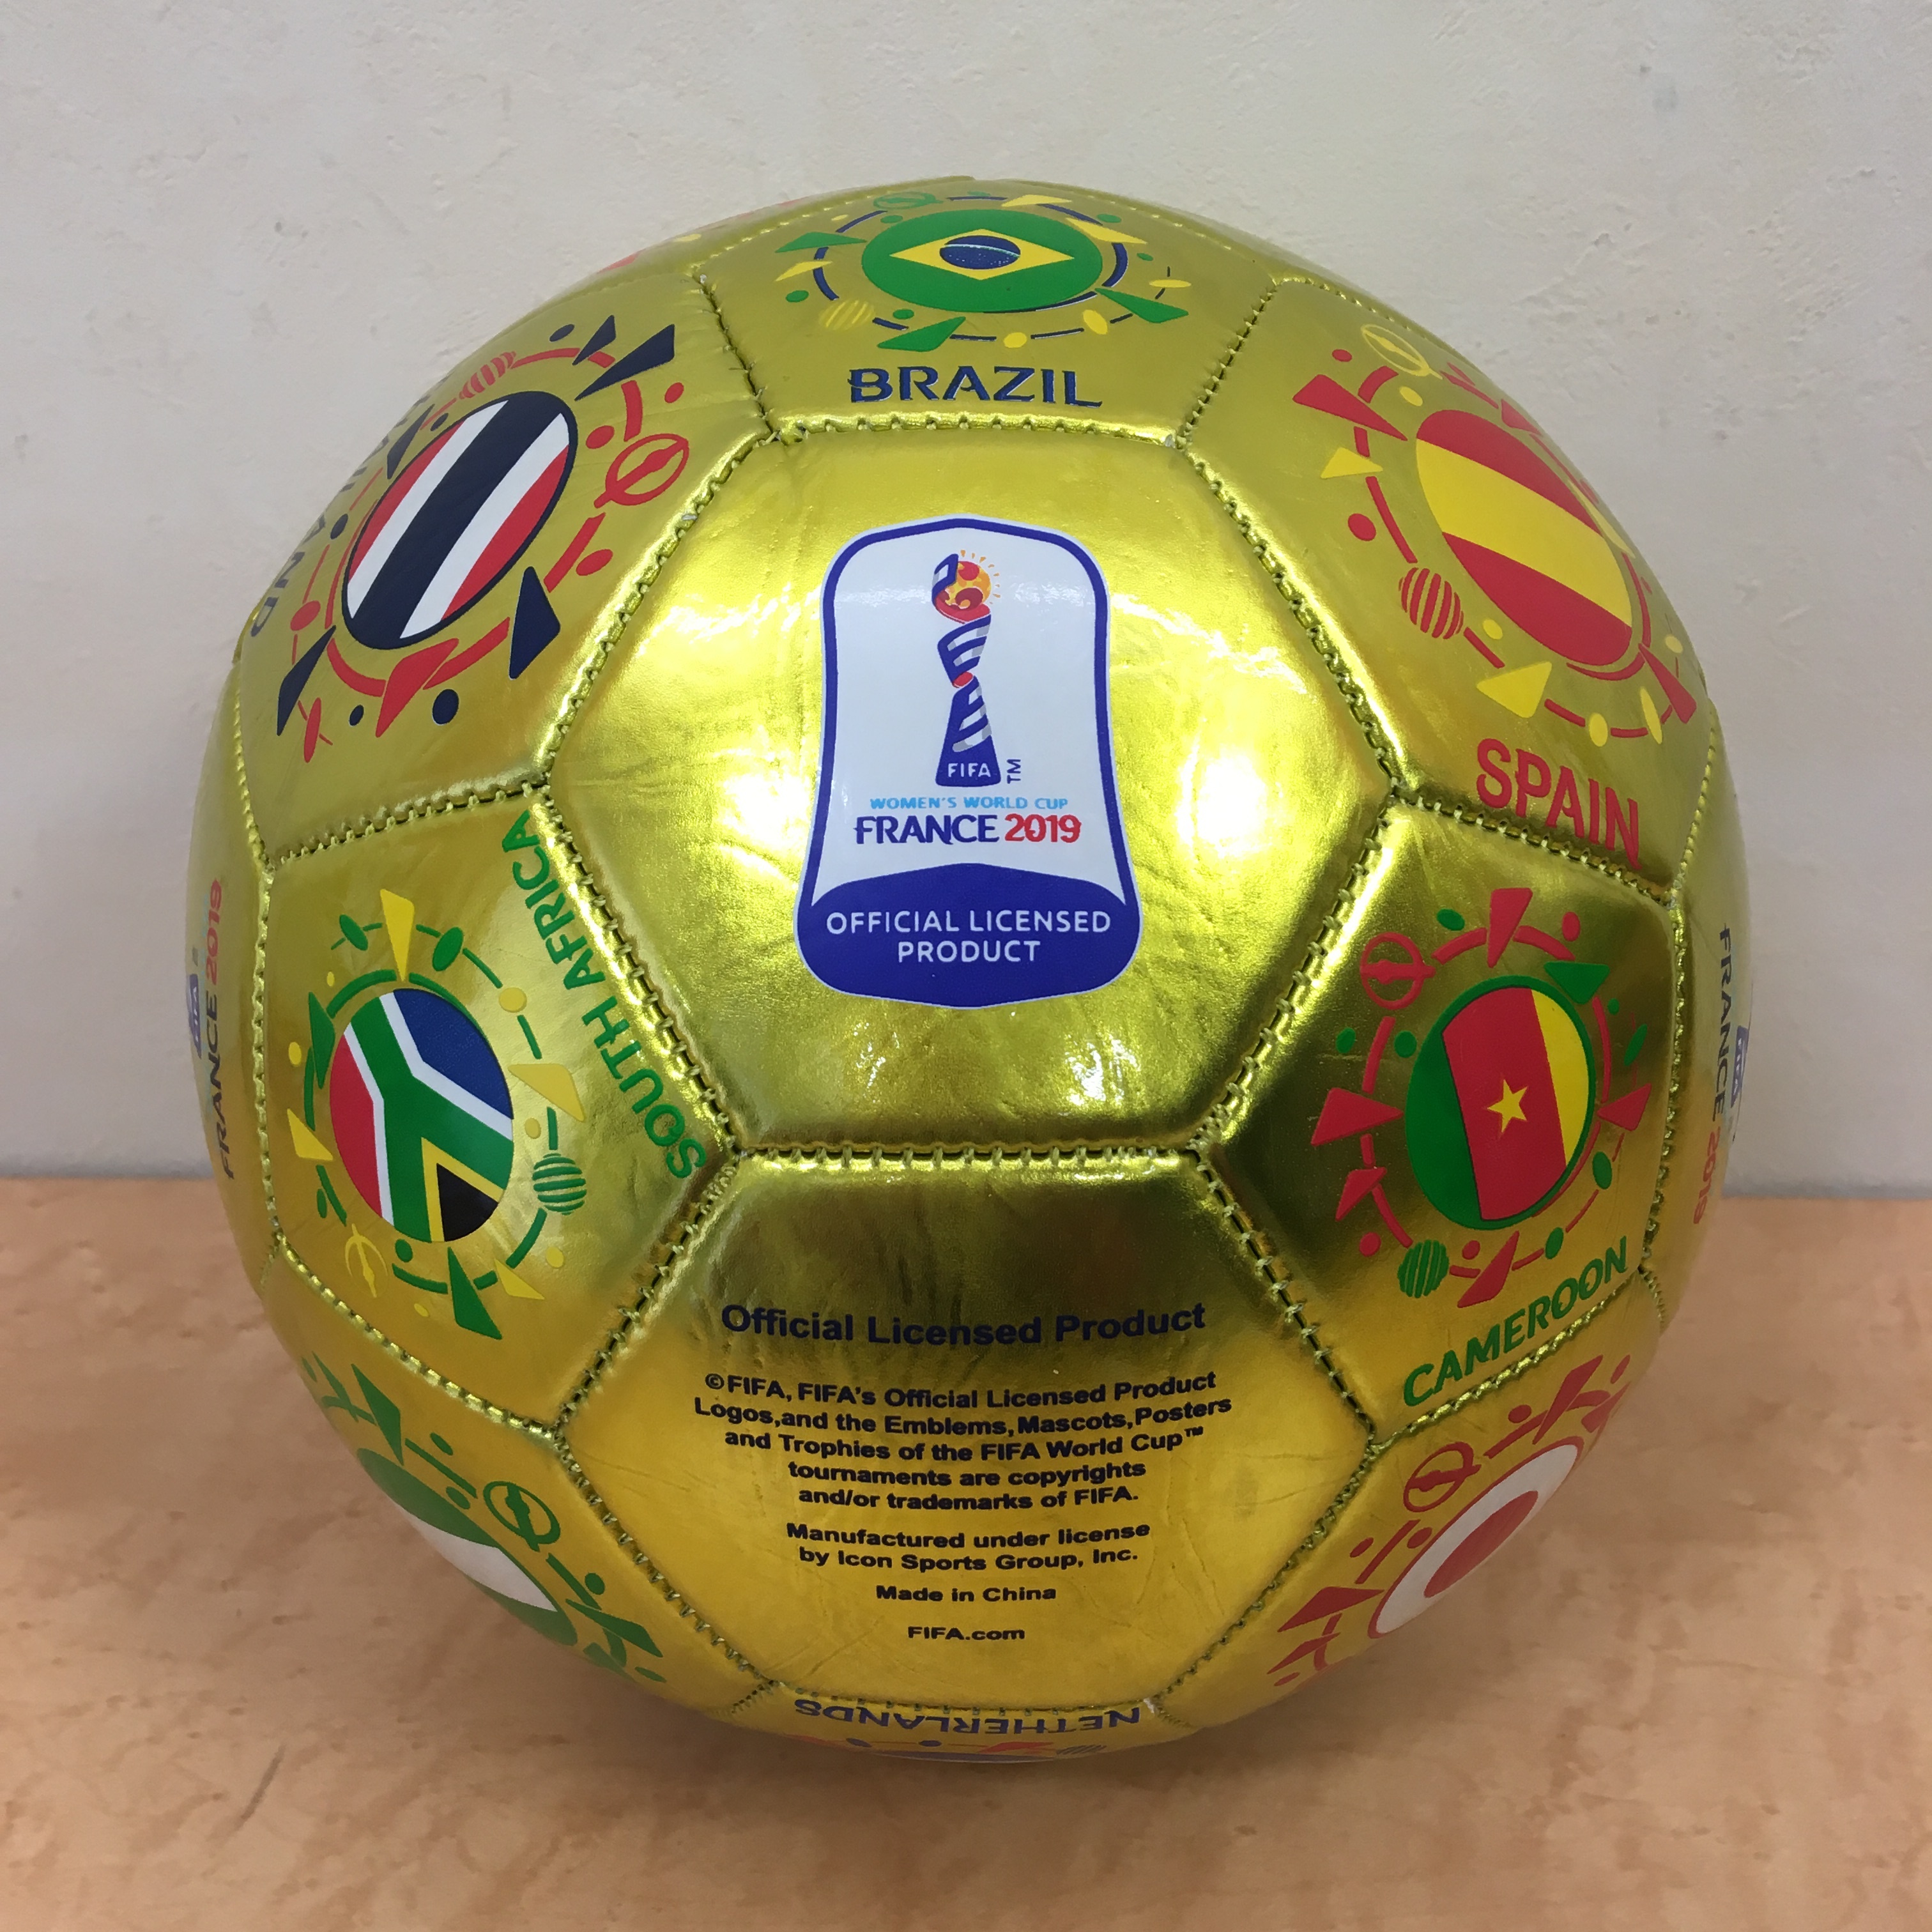 Fifa 女子ワールドカップ フランス 19 公式記念サッカーボール なでしこジャパン Freak スポーツウェア 通販 海外ブランド 日本国内未入荷 海外直輸入